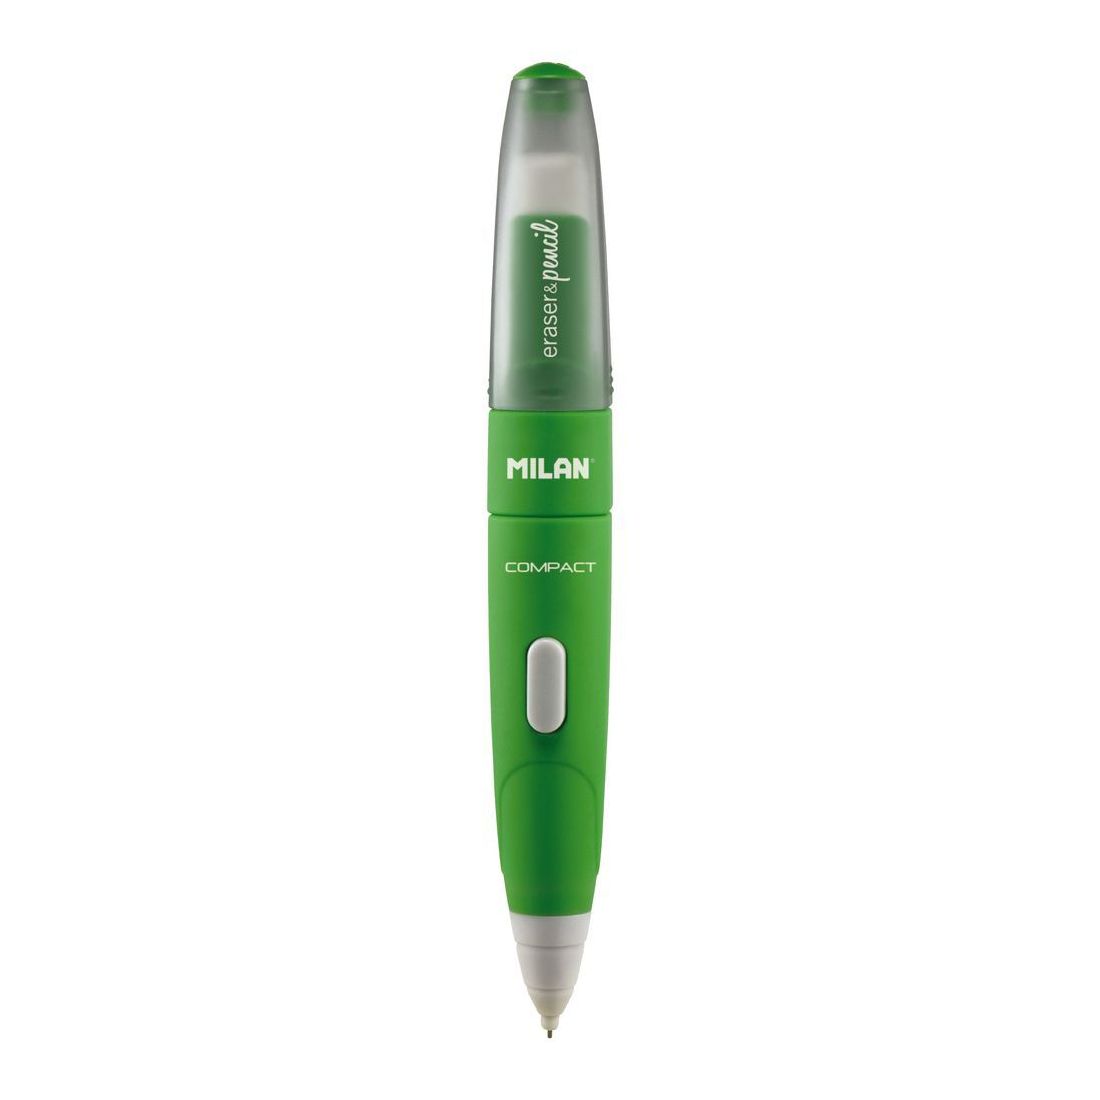 قلم رصاص HB Milan Compact - 0.7 مم